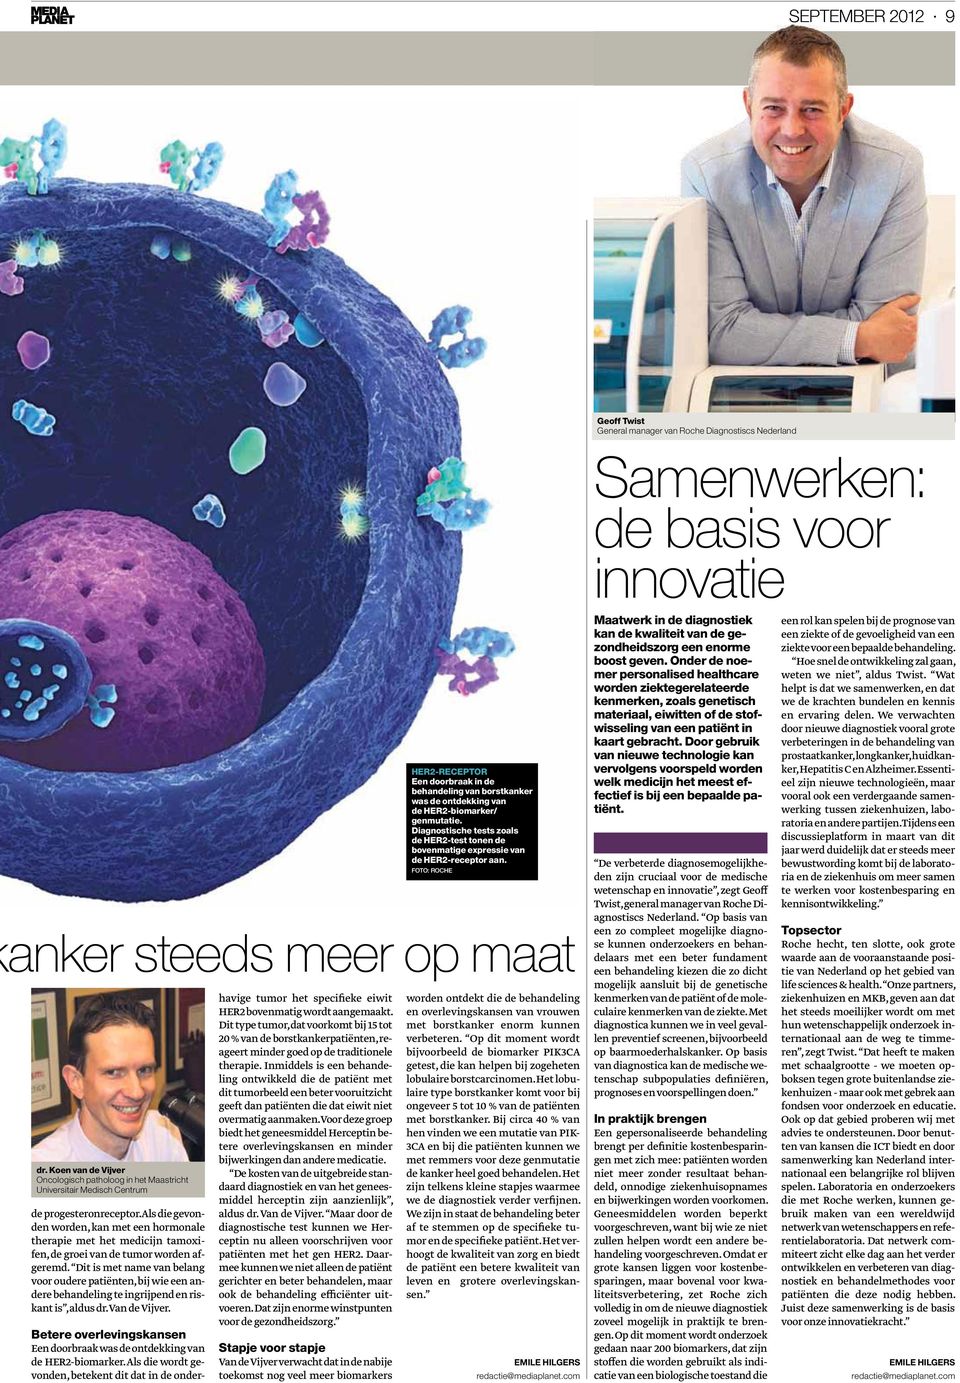 Koen van de Vijver Oncologisch patholoog in het Maastricht Universitair Medisch Centrum de progesteronreceptor.